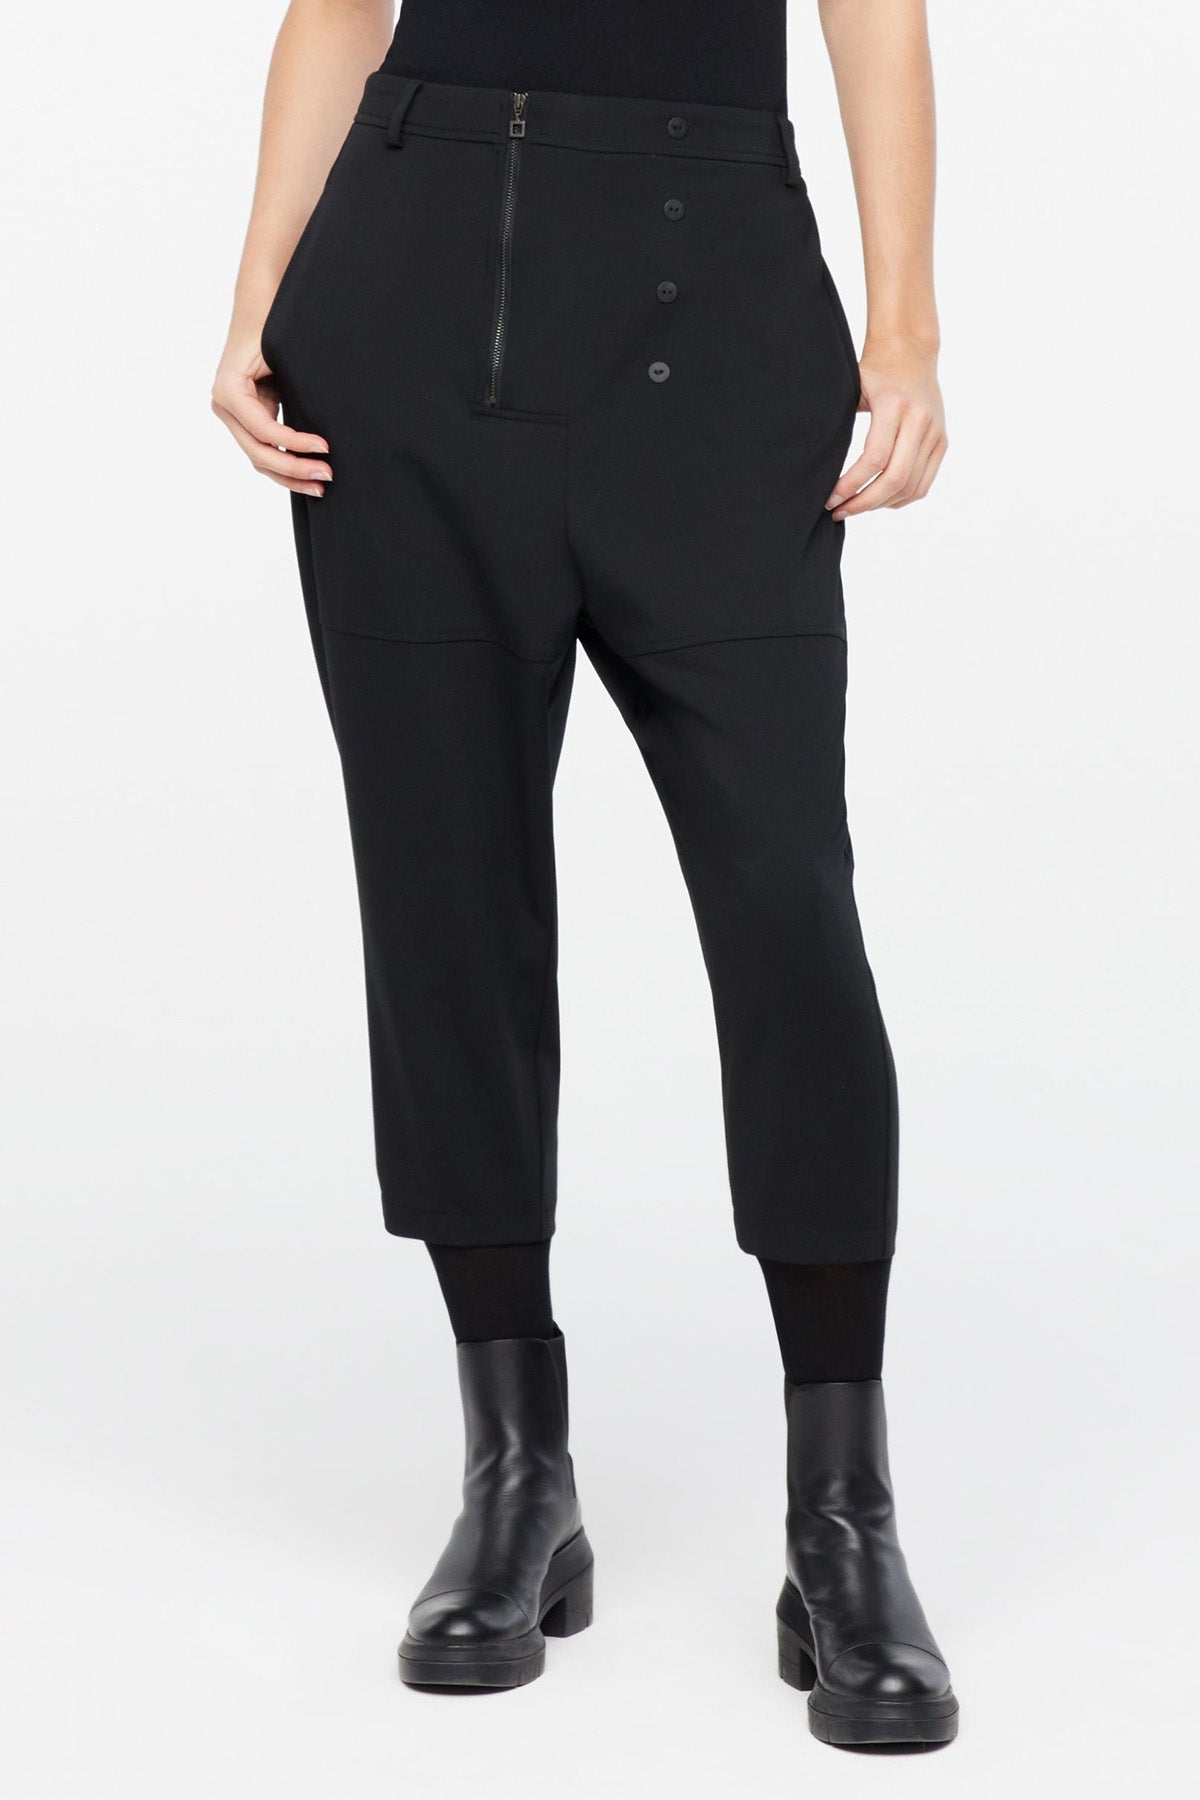 Sarah Pacini Crop Streç Yün Pantolon-Libas Trendy Fashion Store